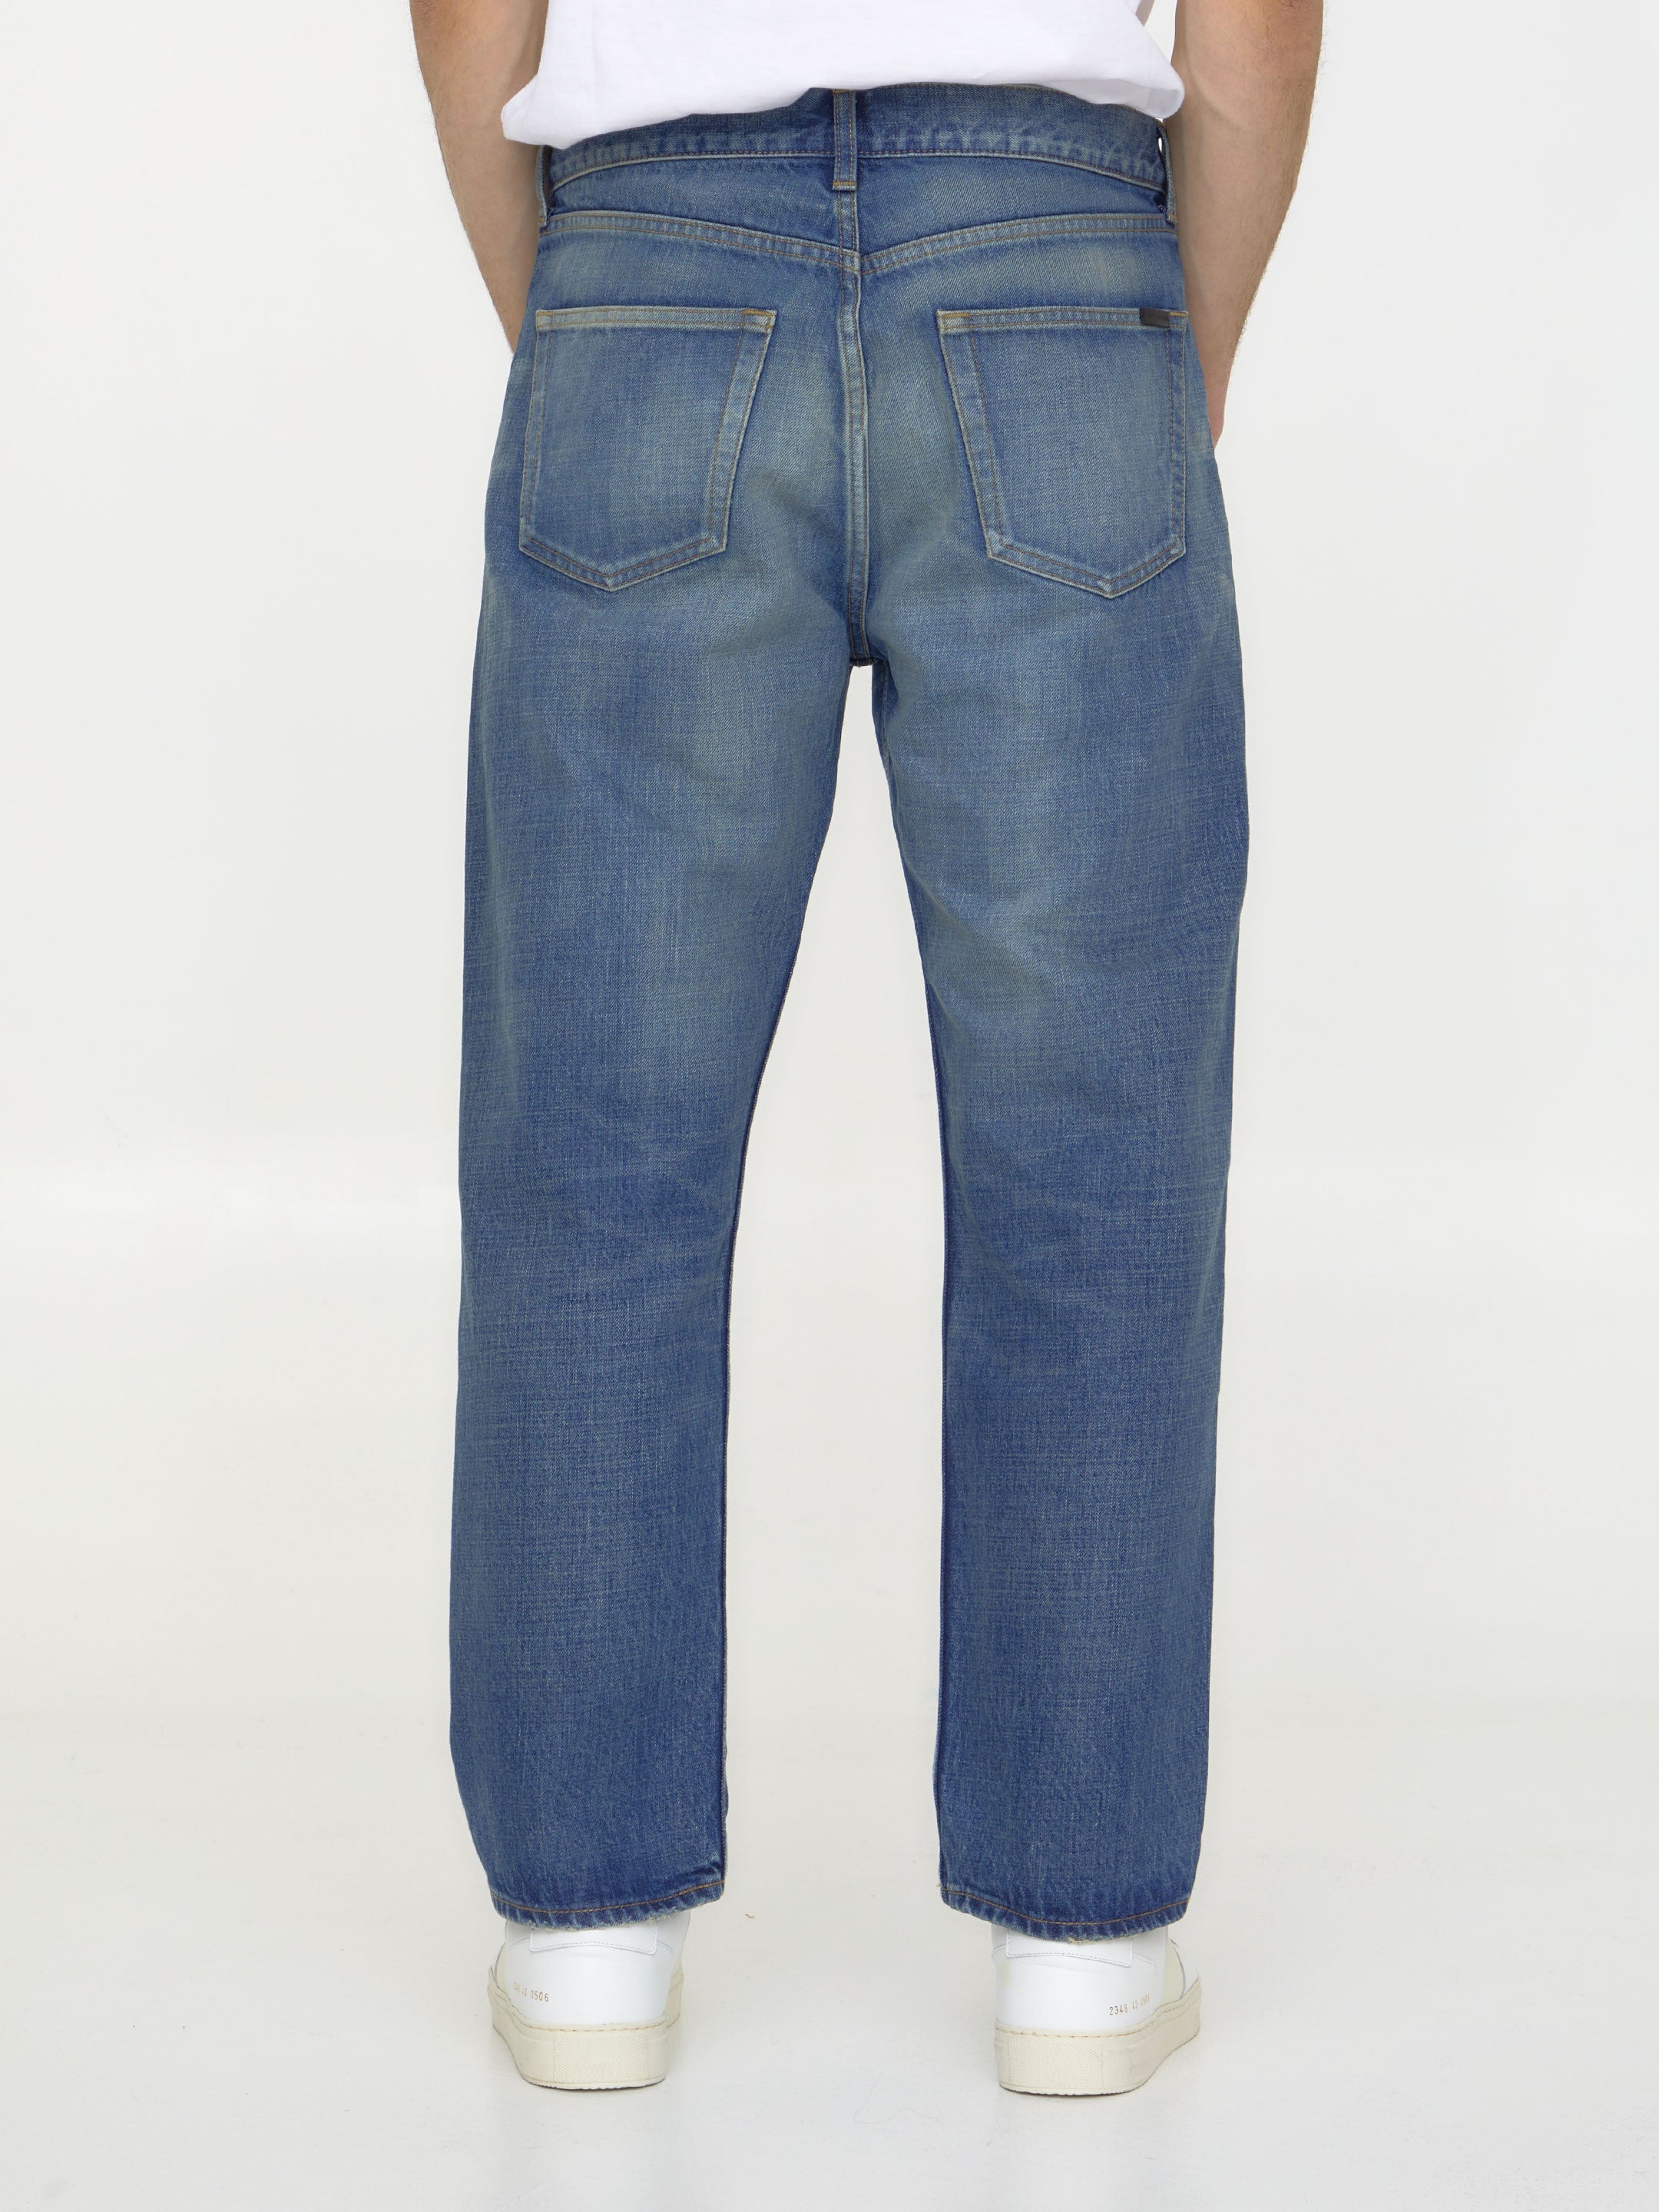 SAINT-LAURENT-OUTLET-SALE-Blue-denim-jeans-Jeans-ARCHIVE-COLLECTION-4.jpg